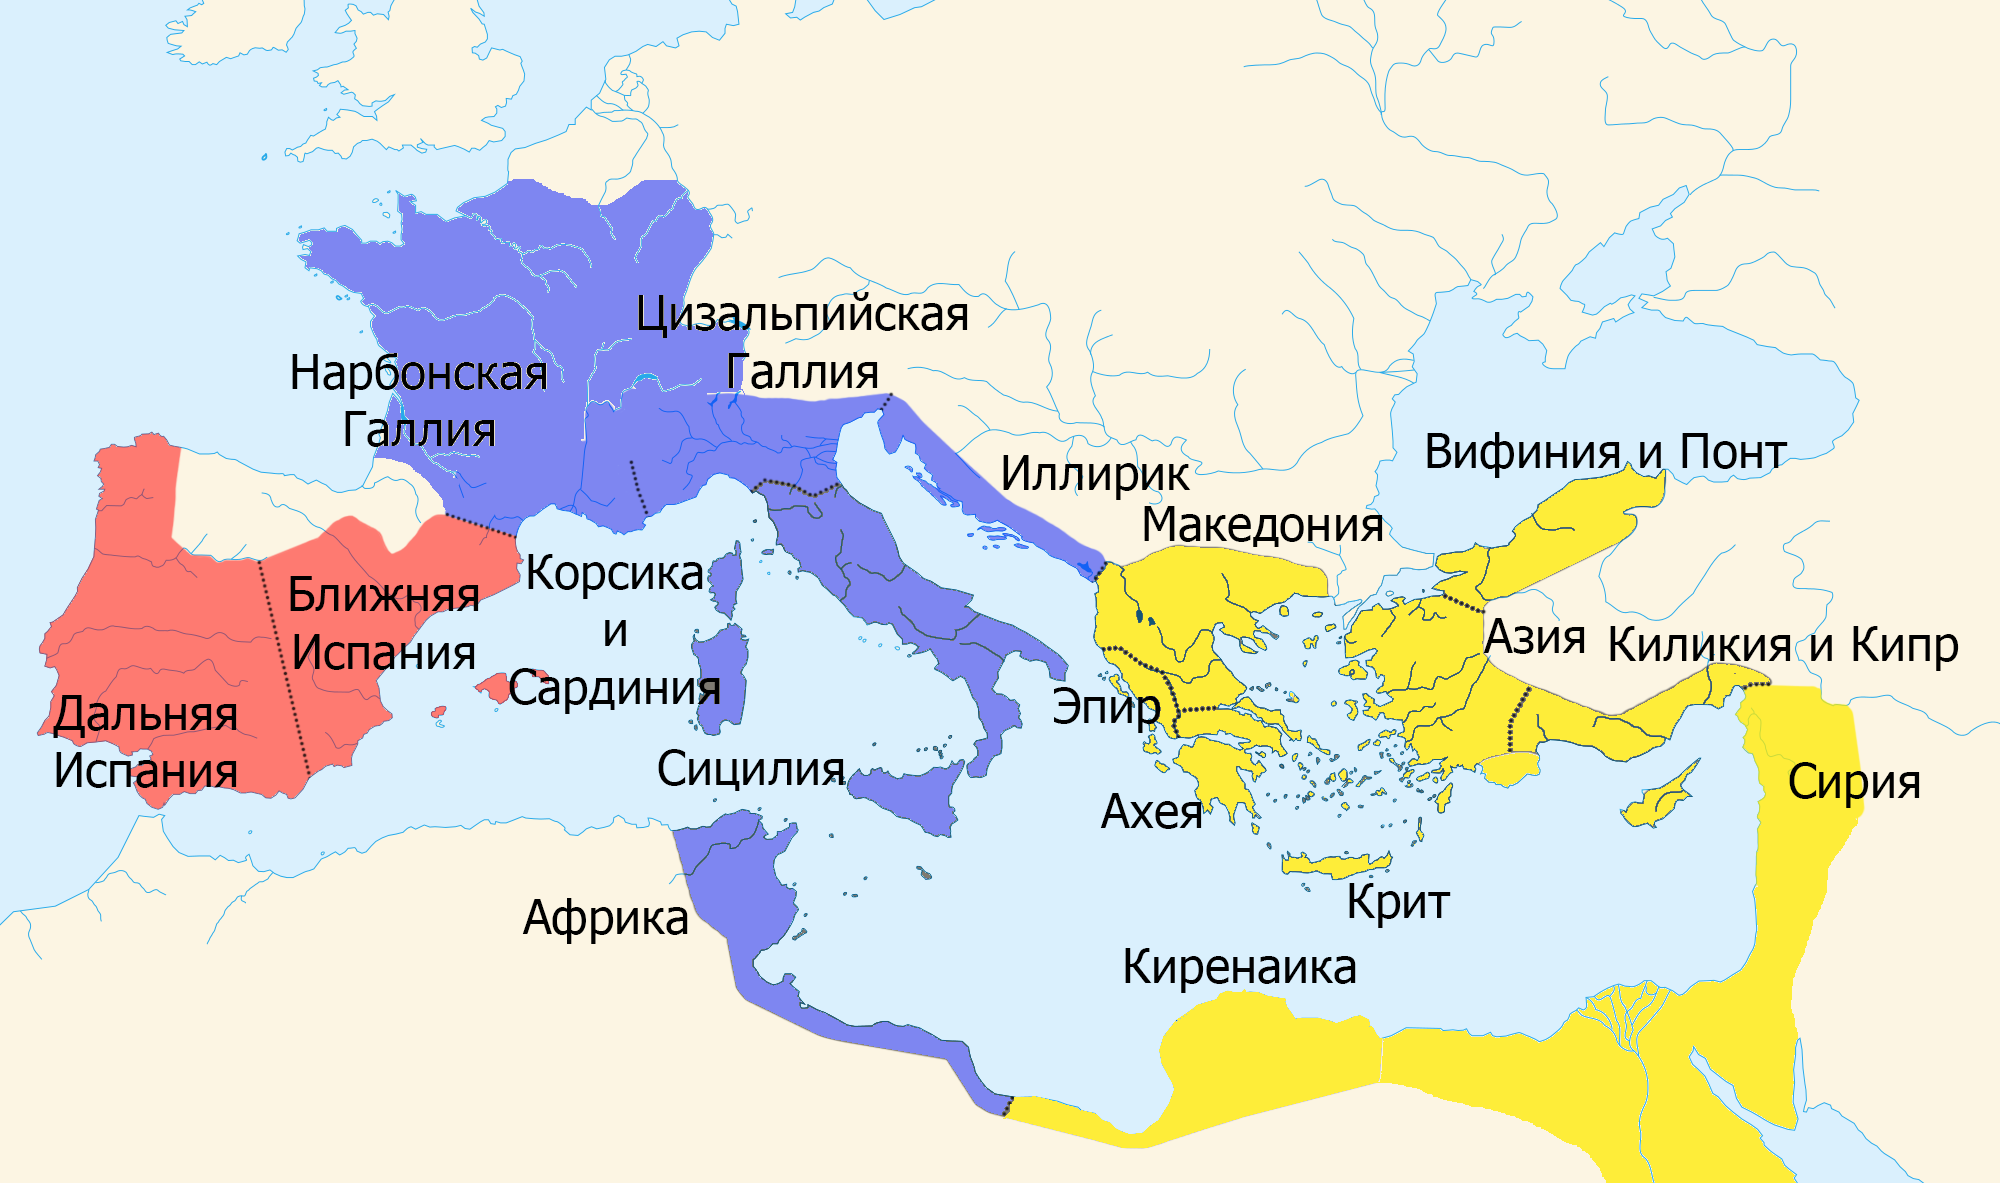 Какую роль сыграло завоевание галлии. Римская Империя при Юлии Цезаре. Римская Империя при Цезаре карта. Римская Империя галлия карта.